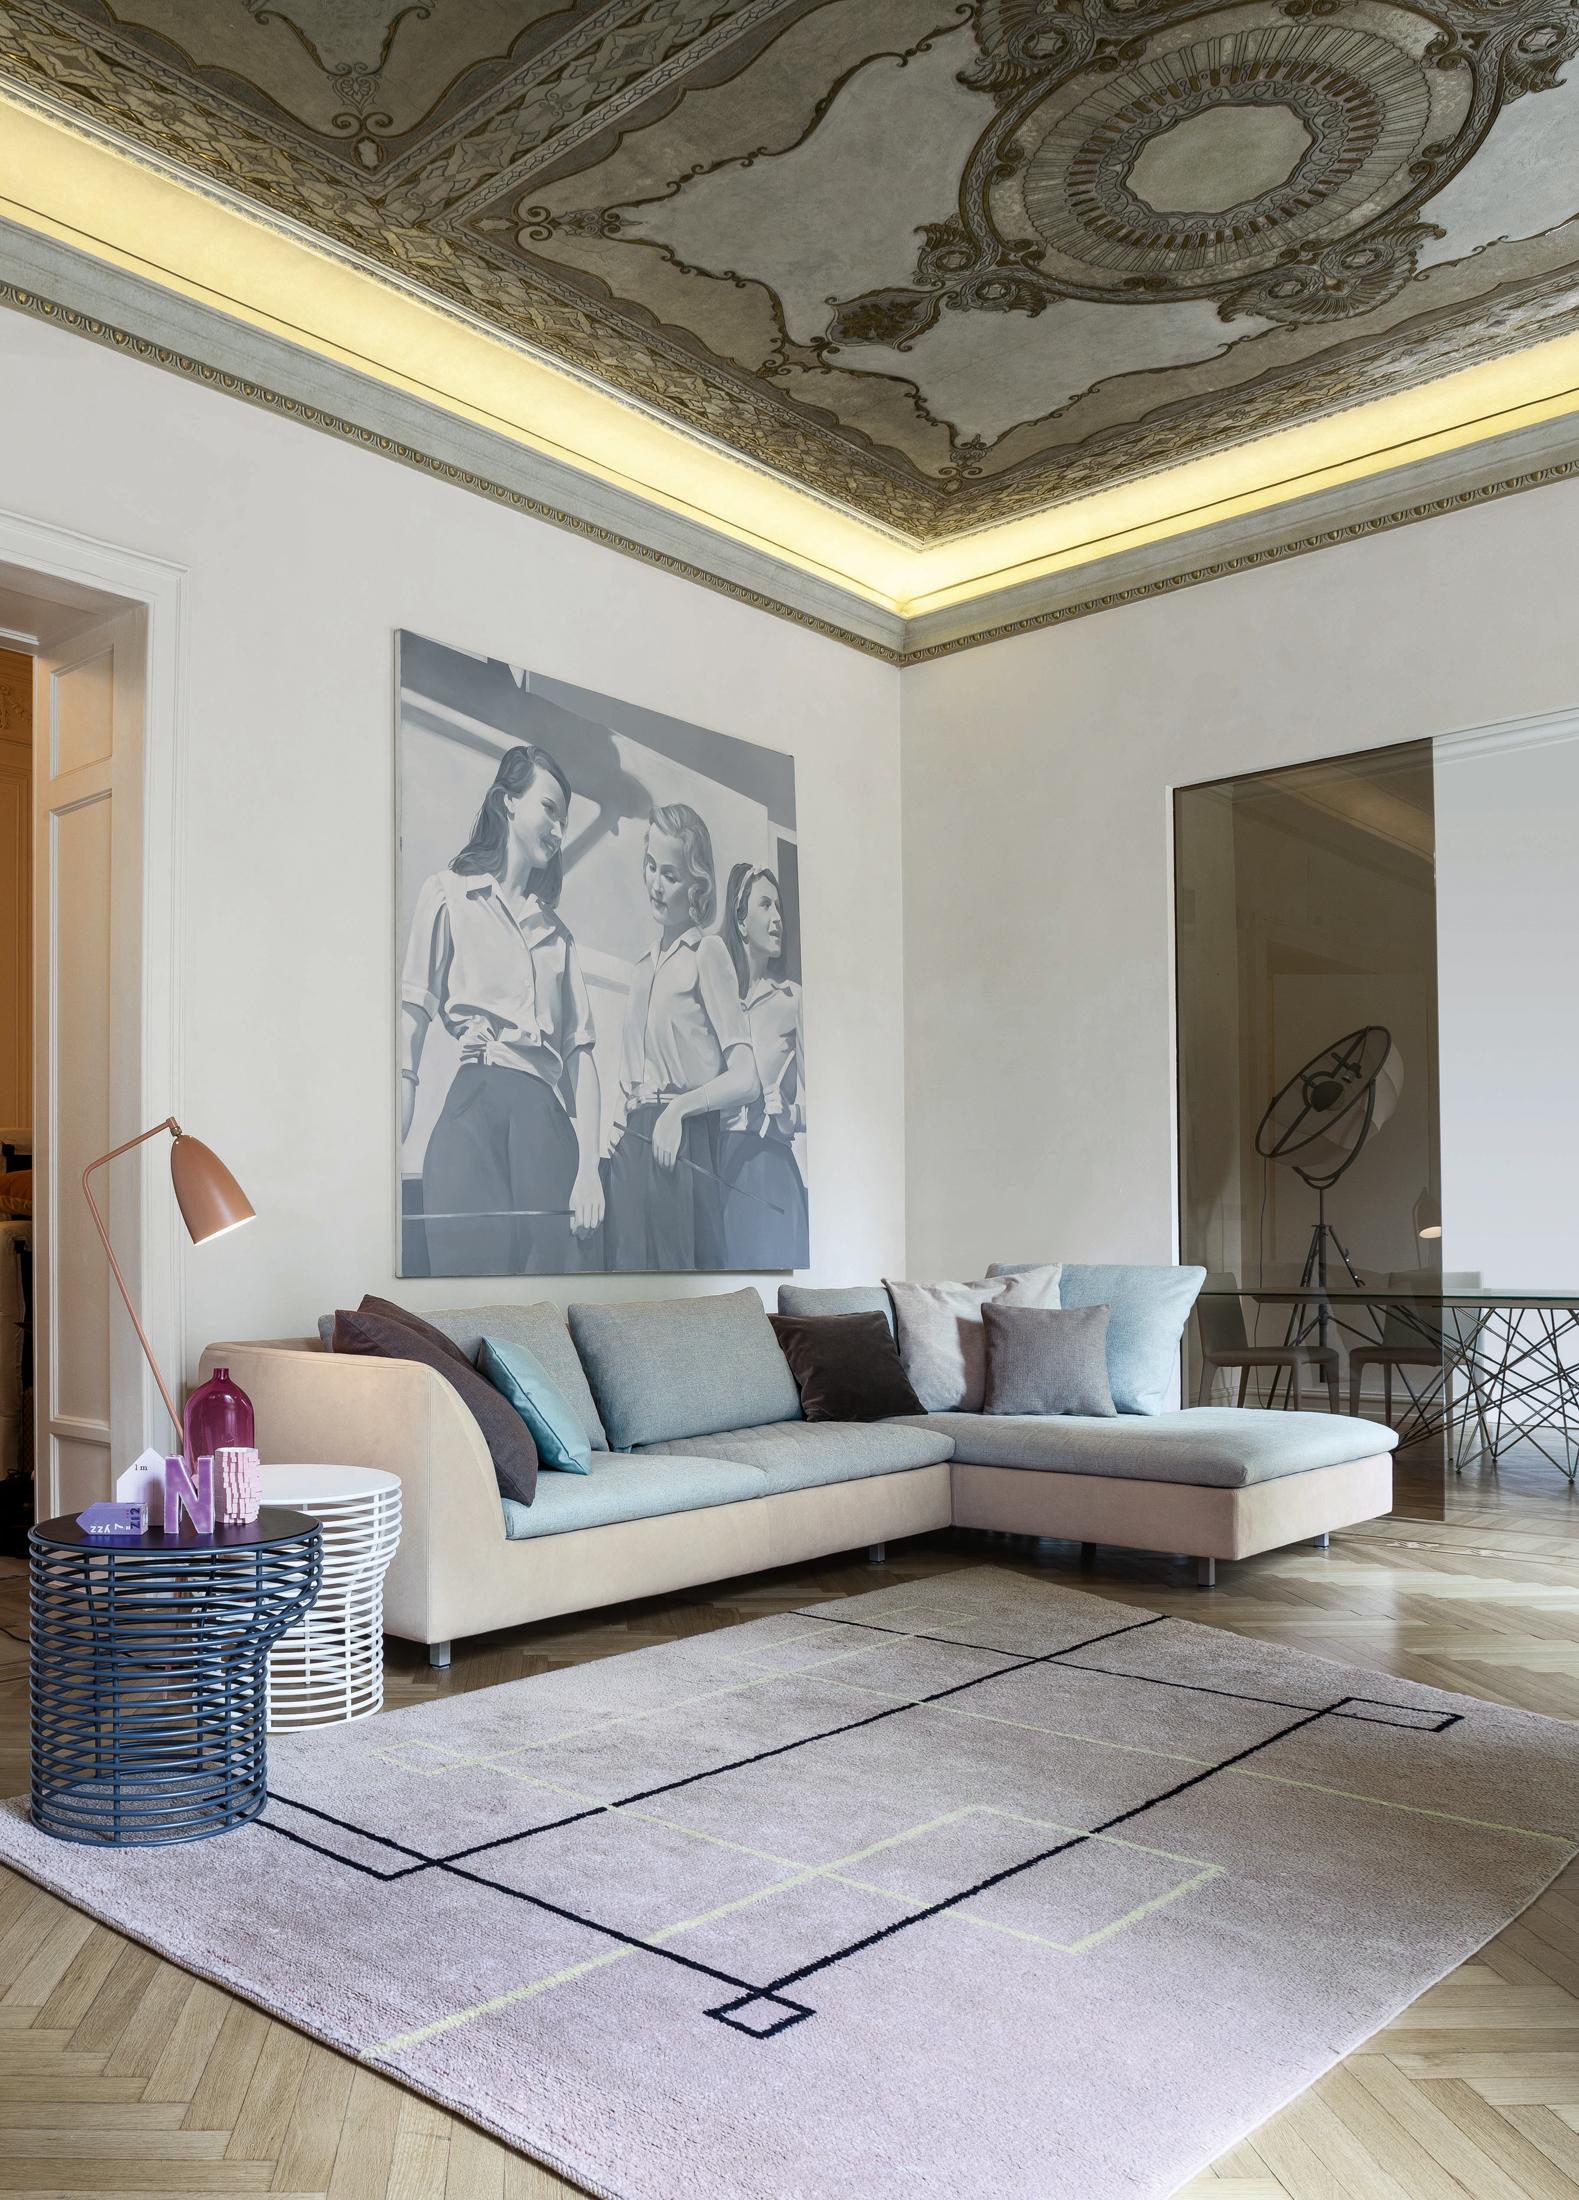 Opulente Deckenmalerei #beistelltisch #teppich #stehlampe #sofa #ottomane #cremefarbenessofa #deckenbild #deckenmalerei ©Bonaldo